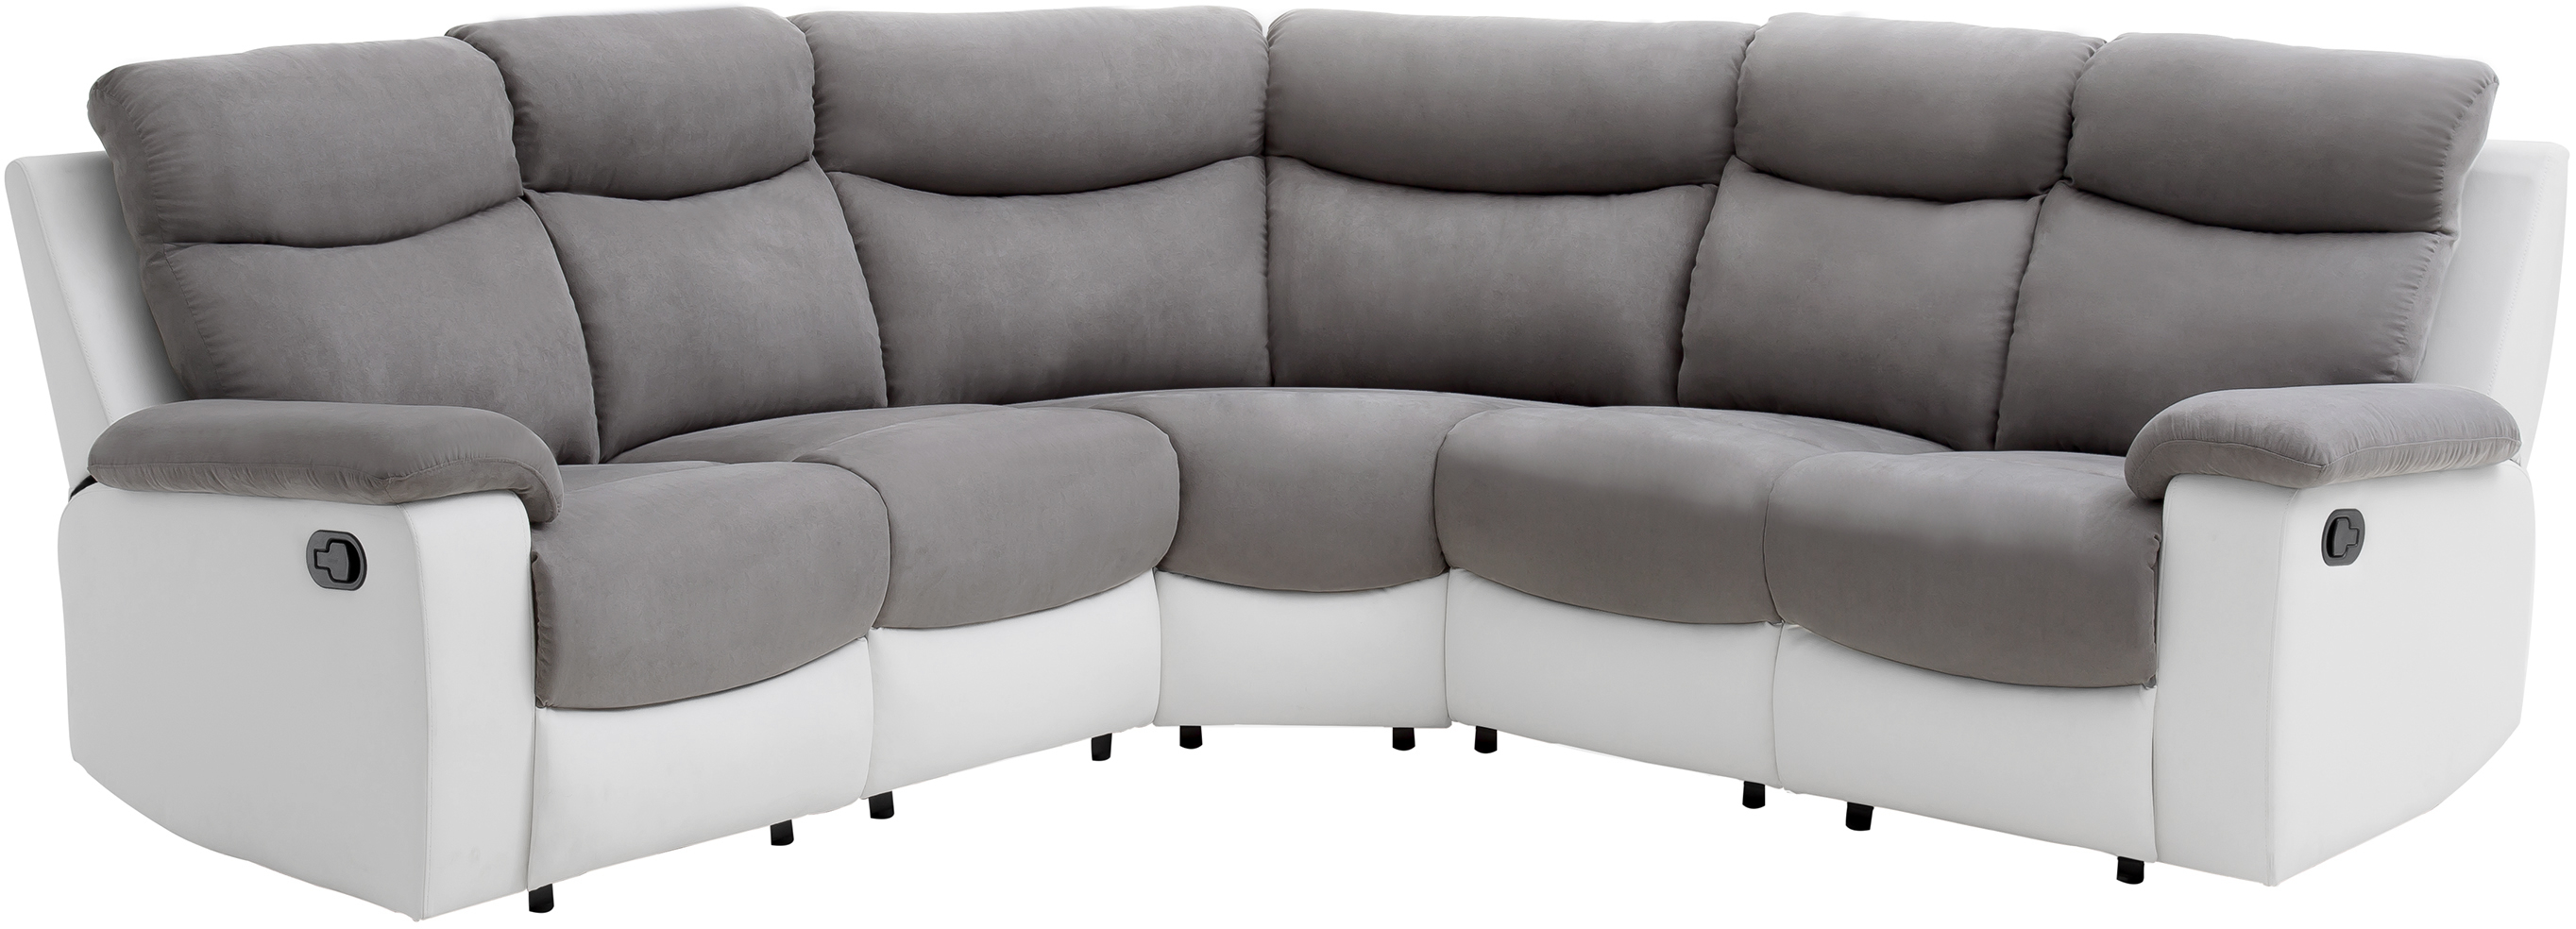 Canapé de relaxation panoramique 6 places en microfibre et simili - Blanc/gris